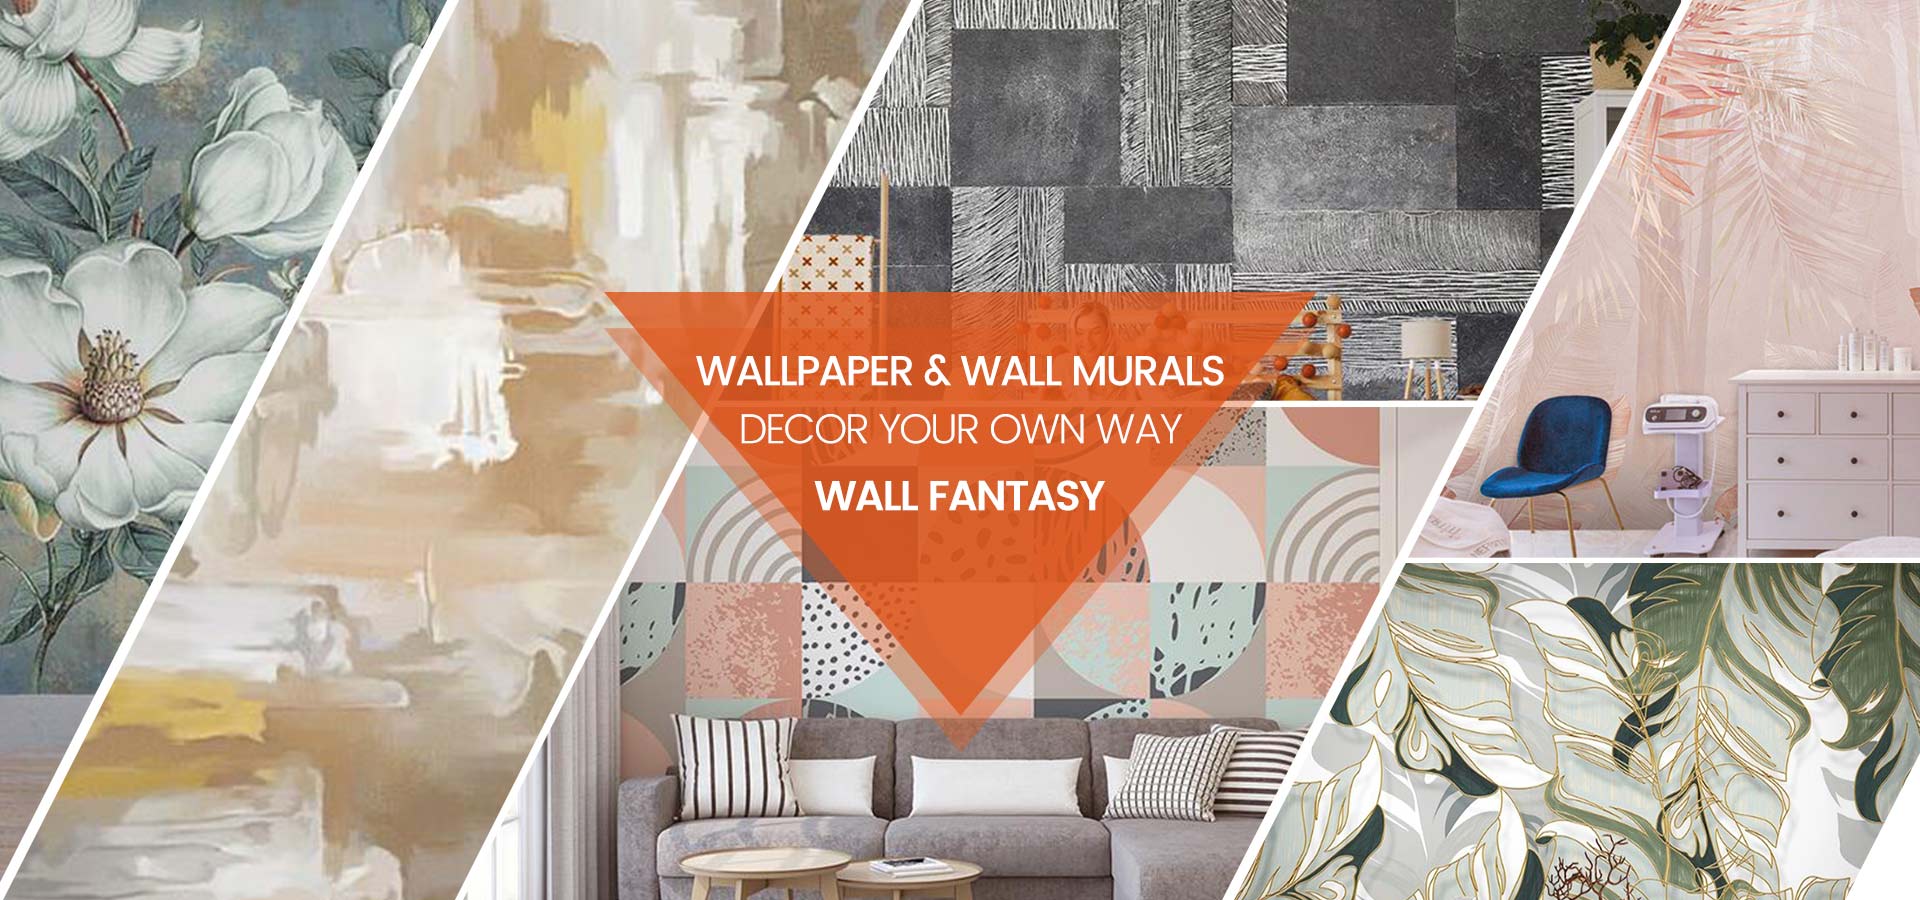 3D Wallpaper Manufacturers, Suppliers, Wholesaler, Best Wallpaper Suppliers